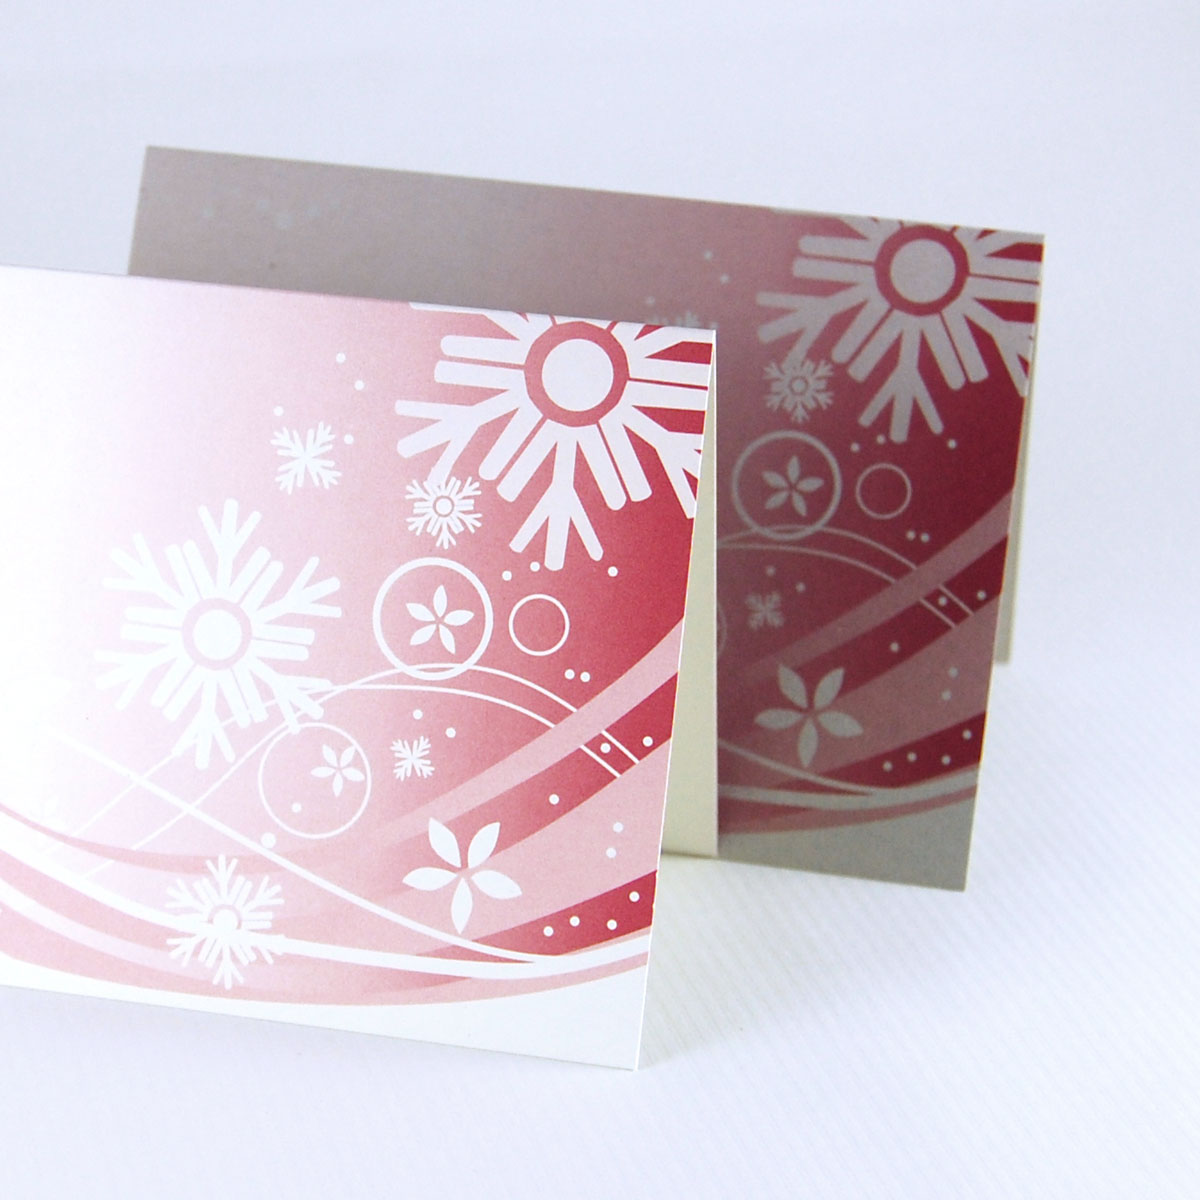 Recycling-Weihnachtskarten gedruckt auf unterschiedlichen Recyclingkartons